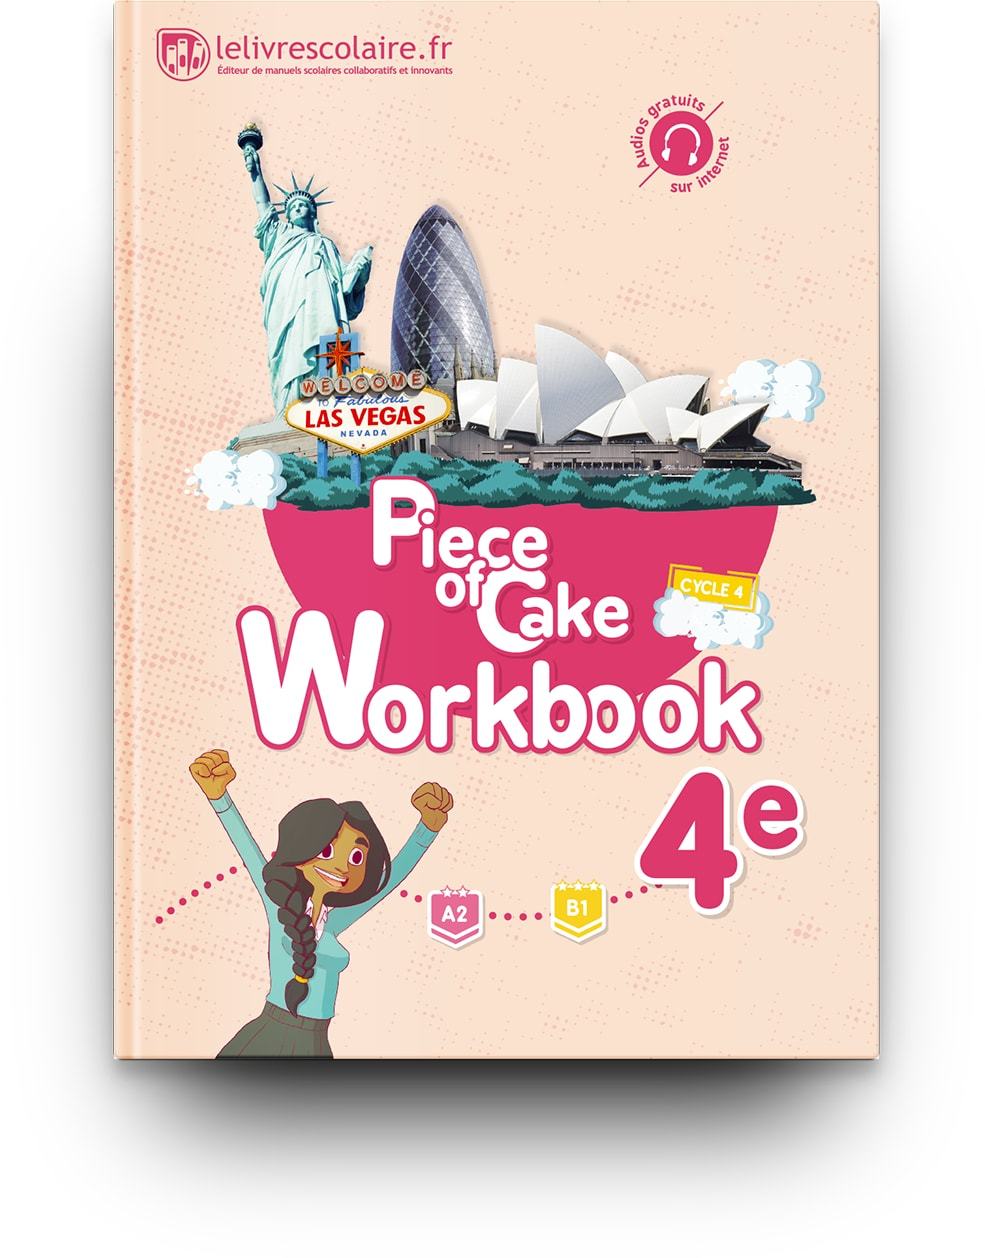 Kniha Workbook Anglais 4e - Piece of Cake, édition 2017 Lelivrescolaire.fr